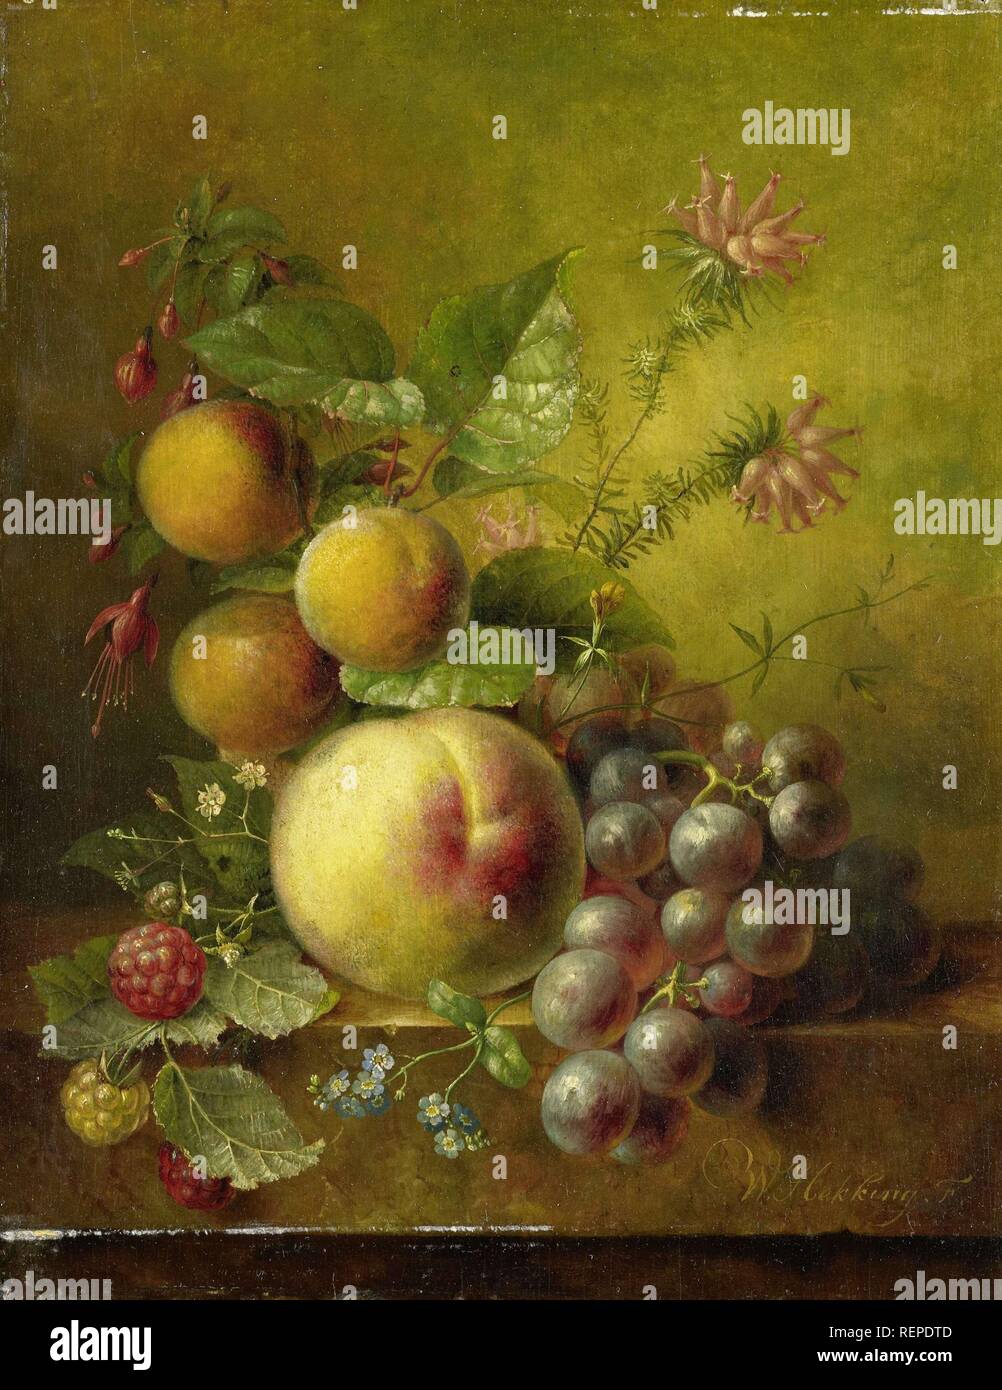 Stillleben mit Obst. Datierung: 1830 - 1862. Maße: H 30,2 cm x B 24 cm x T 1,3 cm, d 10 cm.. Museum: Rijksmuseum, Amsterdam. Autor: Willem Hekking (I). Stockfoto